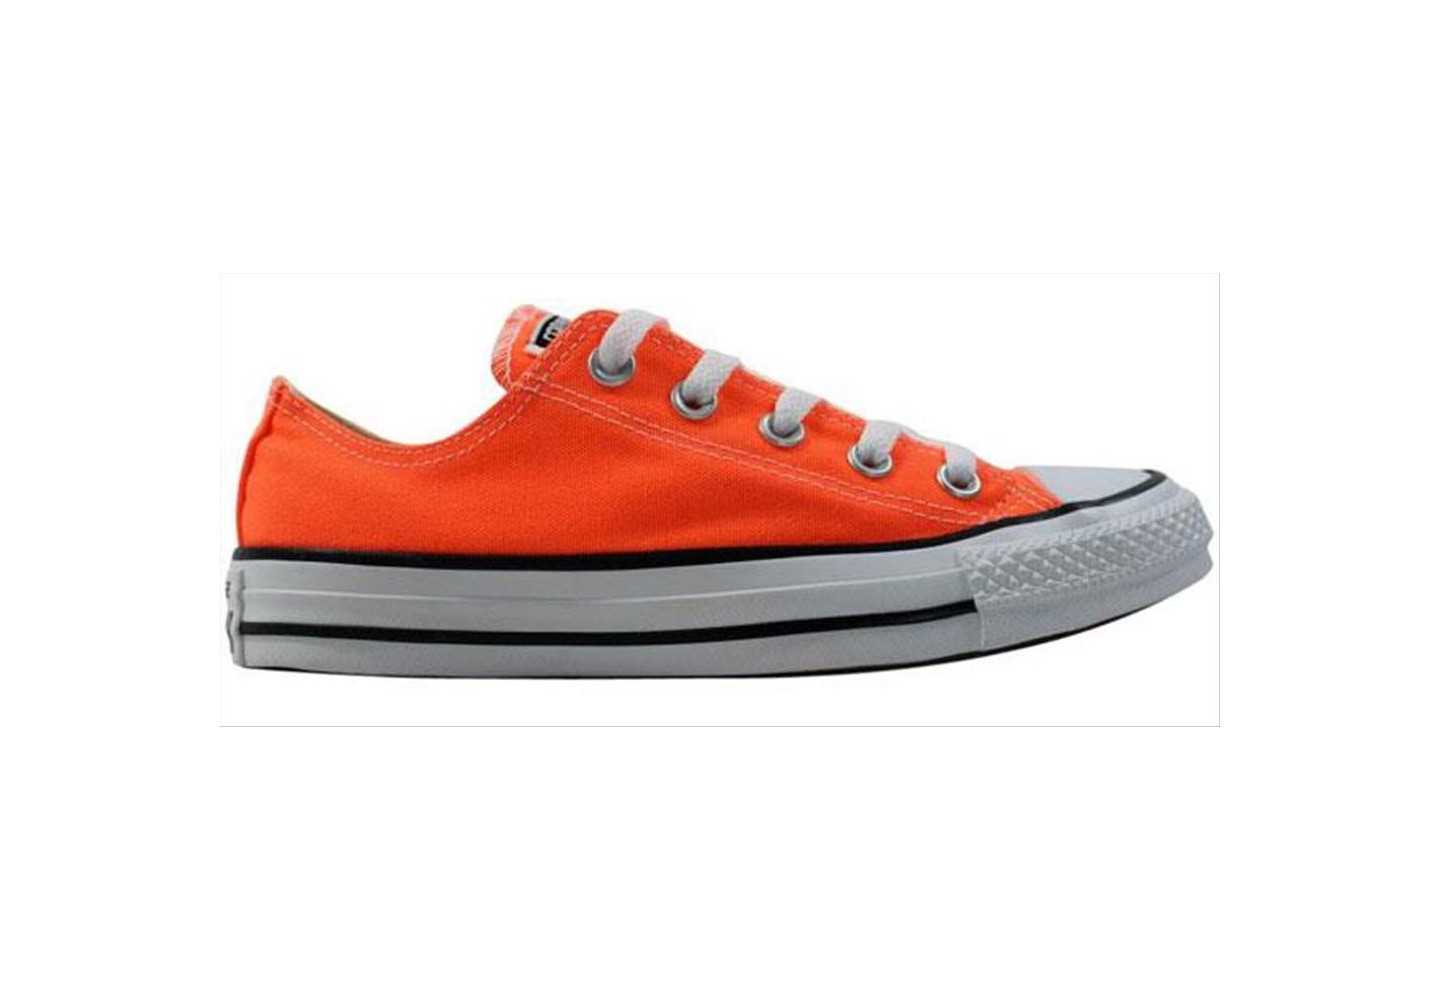 Sneakers Converse All Star bassa da uomo 155736C arancione fluo